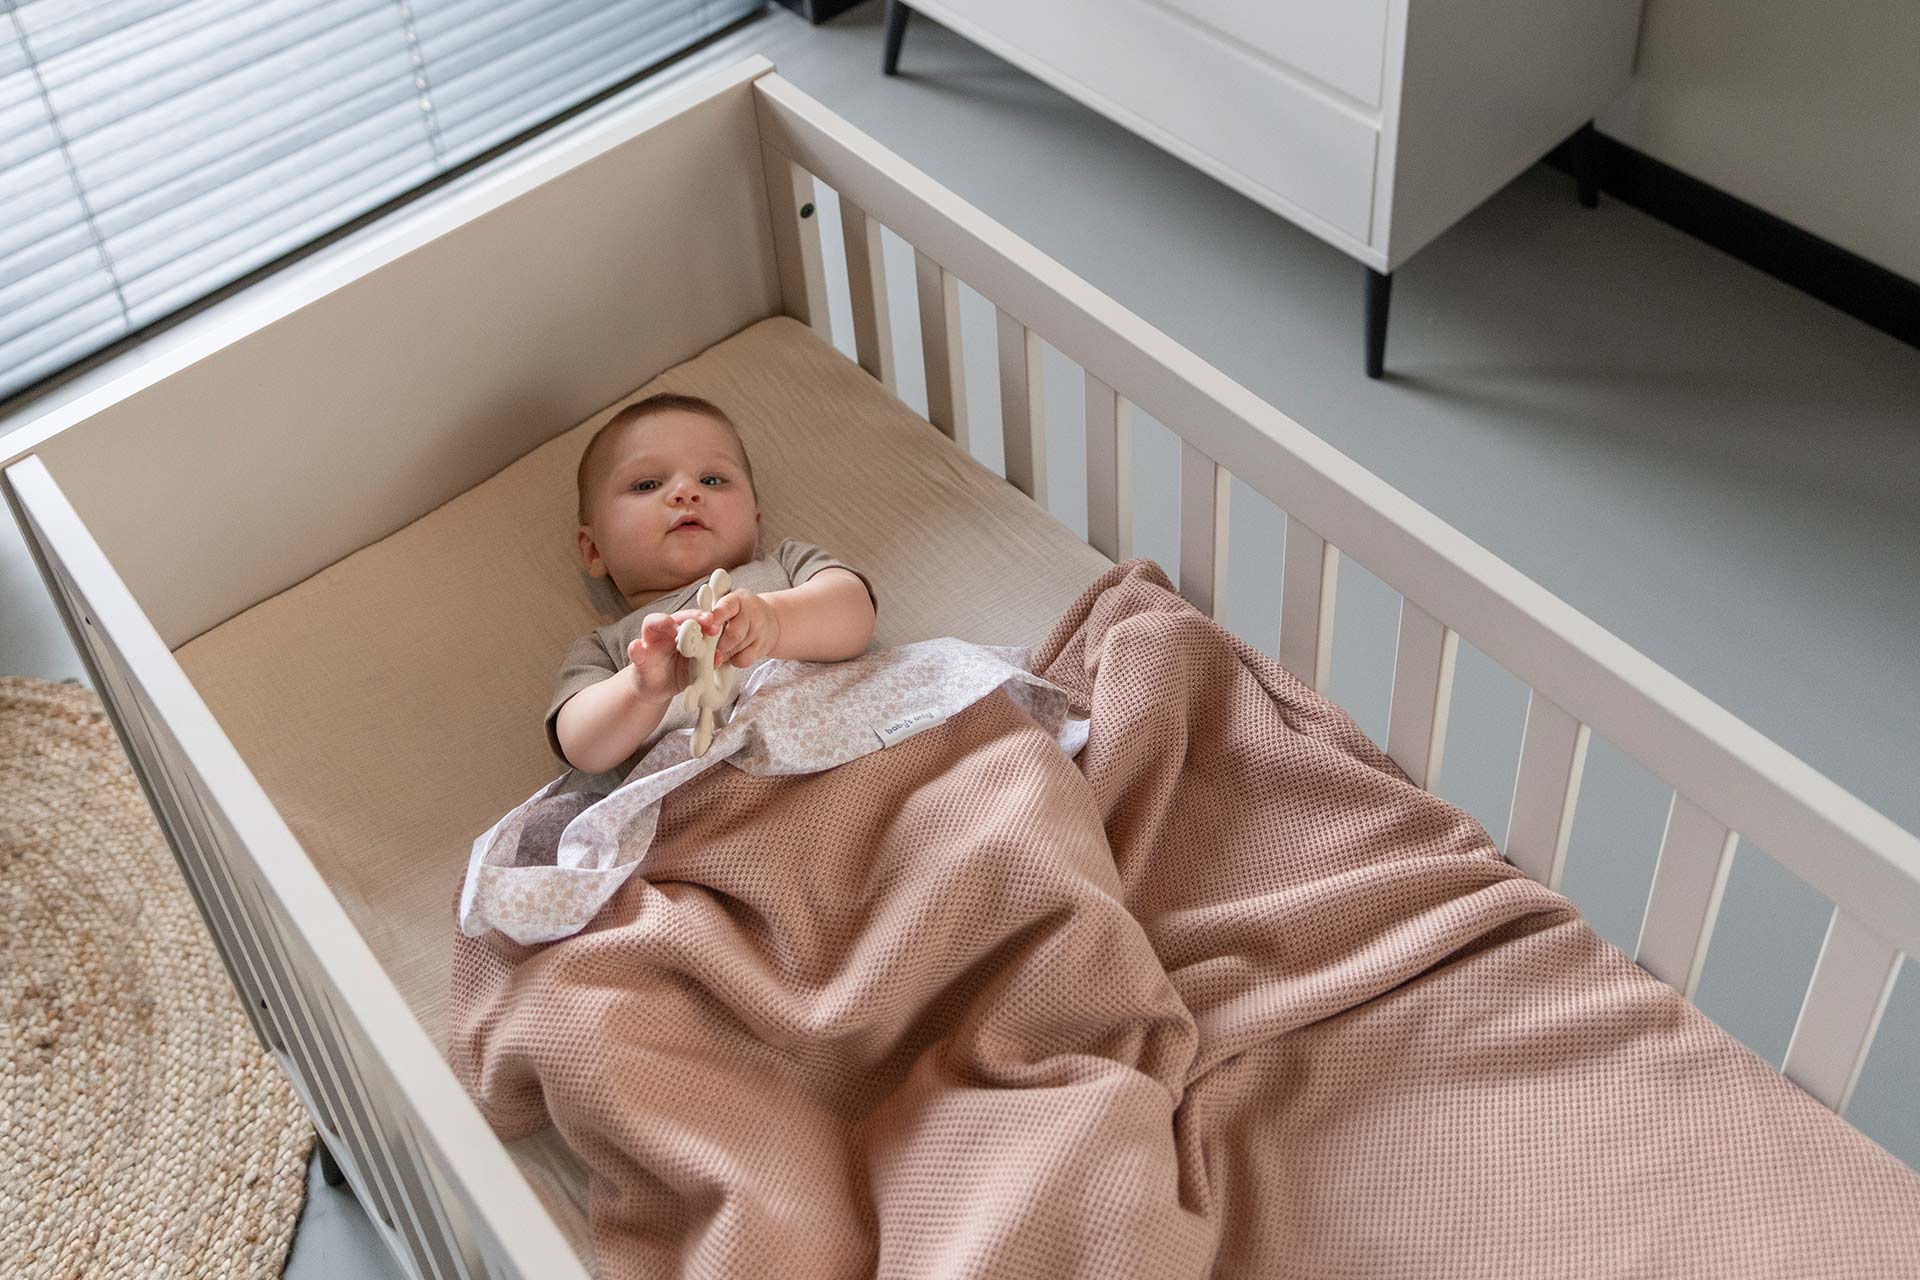 Le mobile pour lit bébé - Ma Baby Checklist